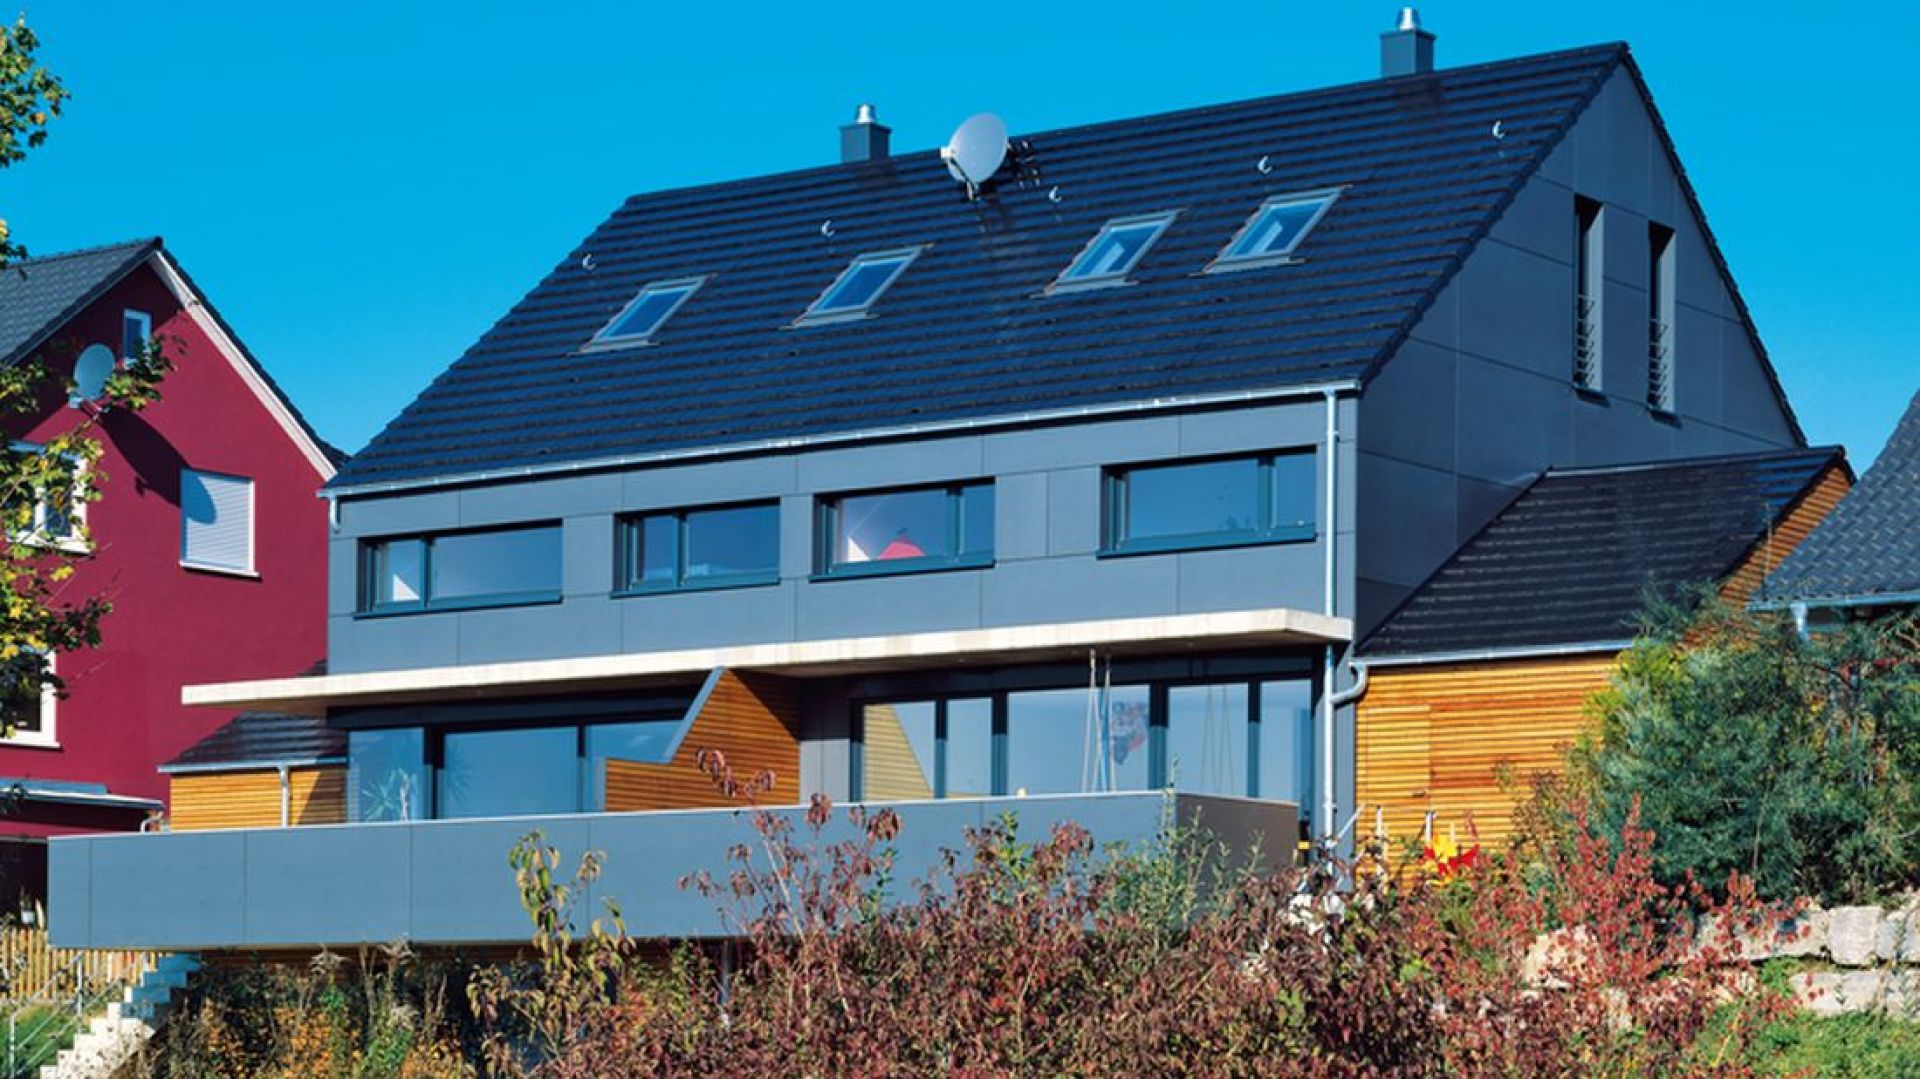 Podpowiadamy, jak dopasować dach i wykończenie bryły  domu pod względem koloru i stylu